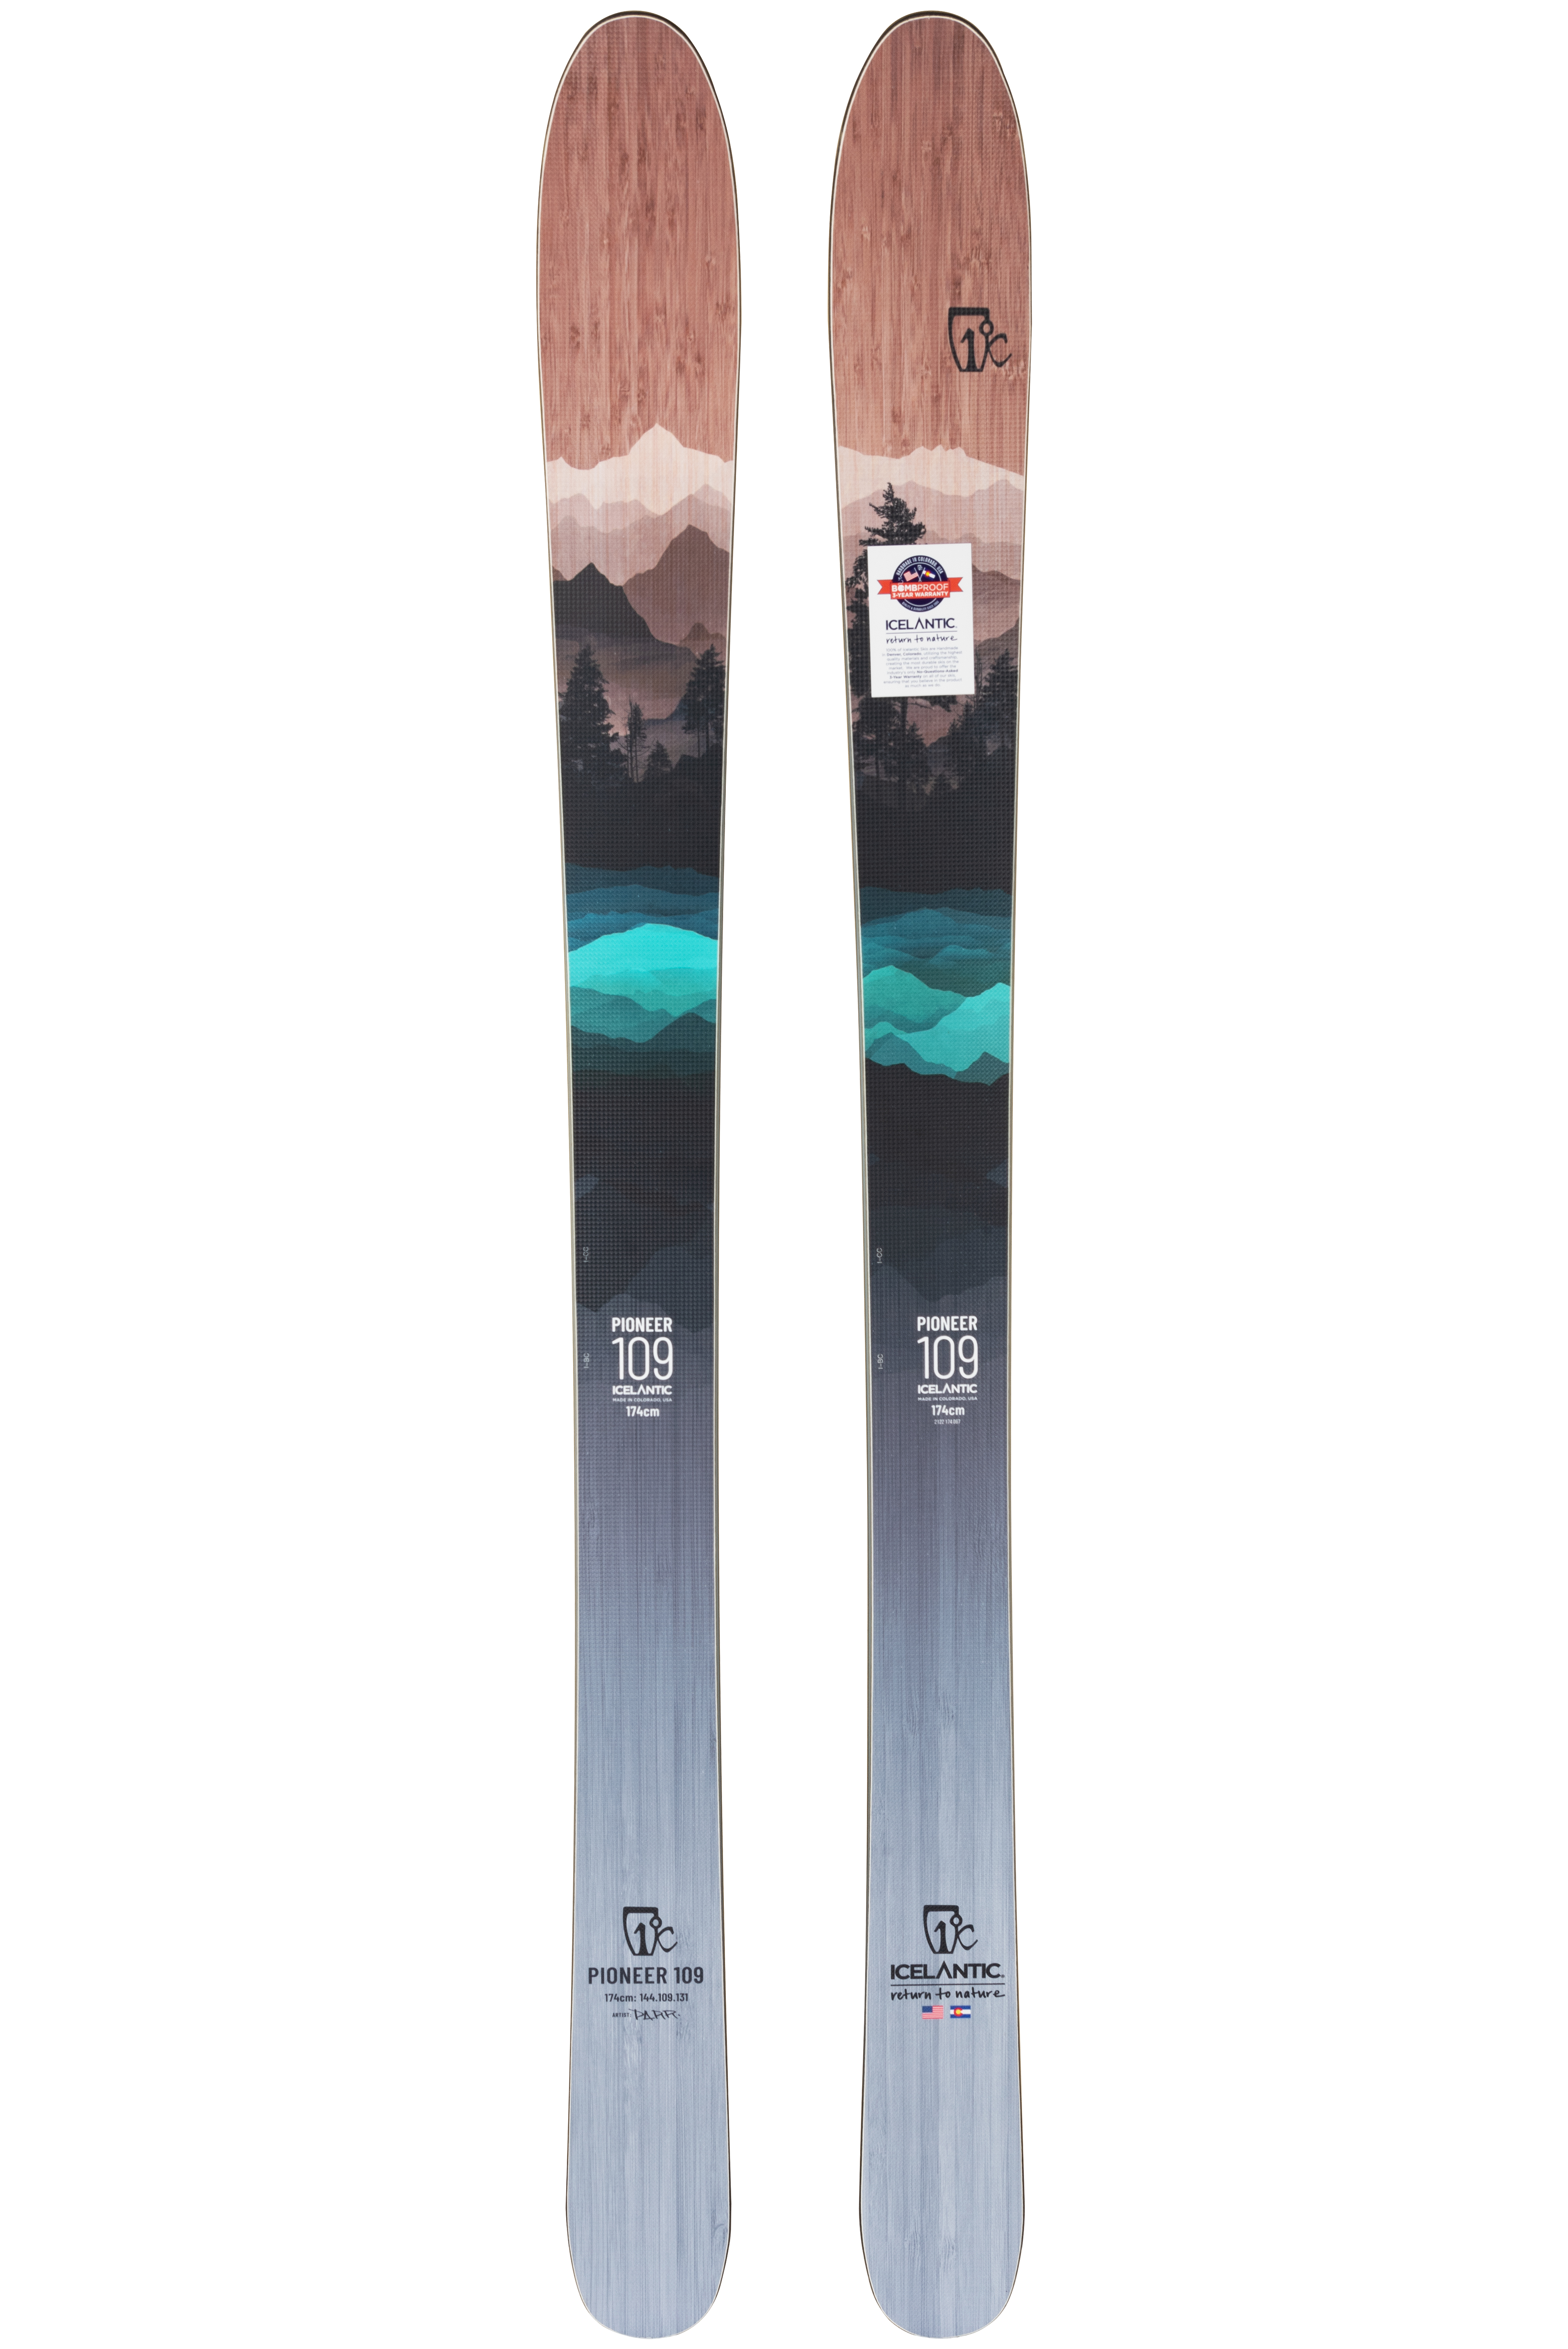 Купить лыжи для фрирайда Icelantic Pioneer 109 2021/2022 182cm в Киеве